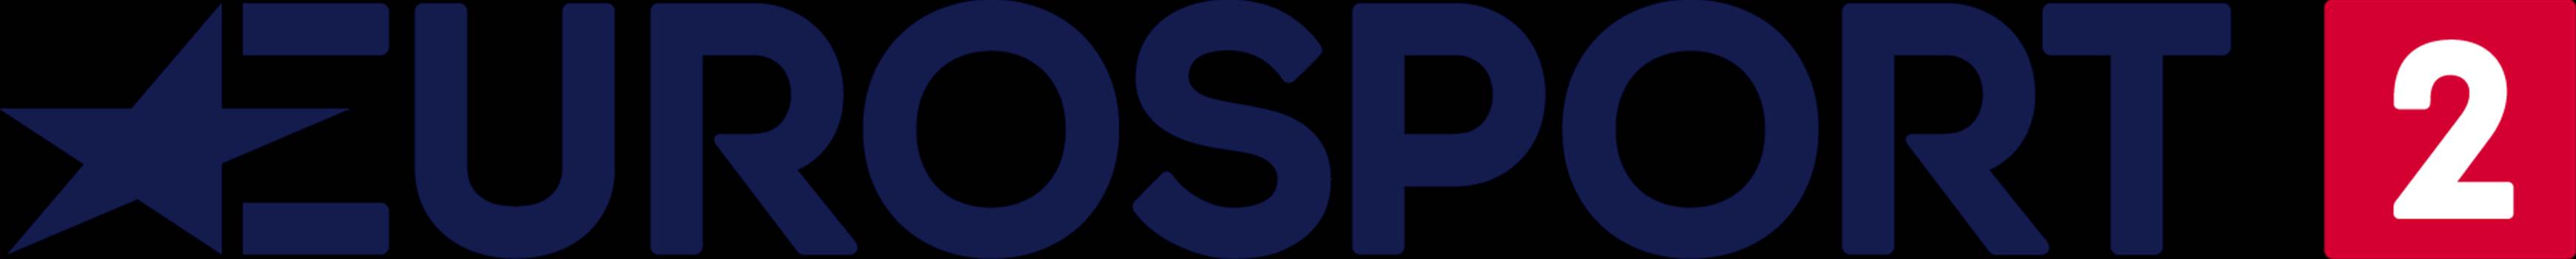 Eurosport_2_2015_logo.png by otan